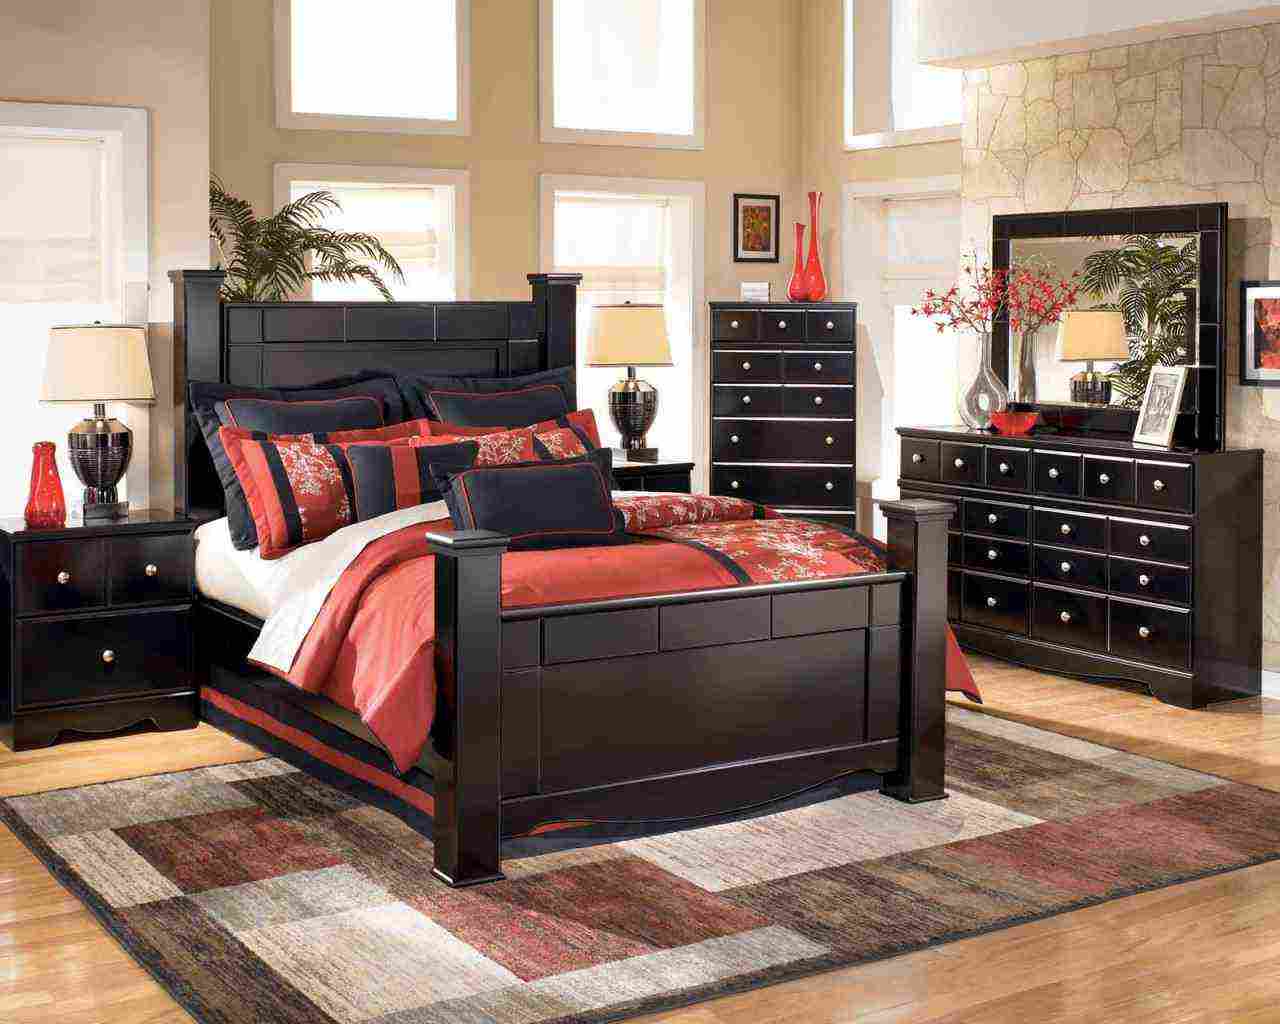 Black Wood Bedroom Furniture Decor Ideas